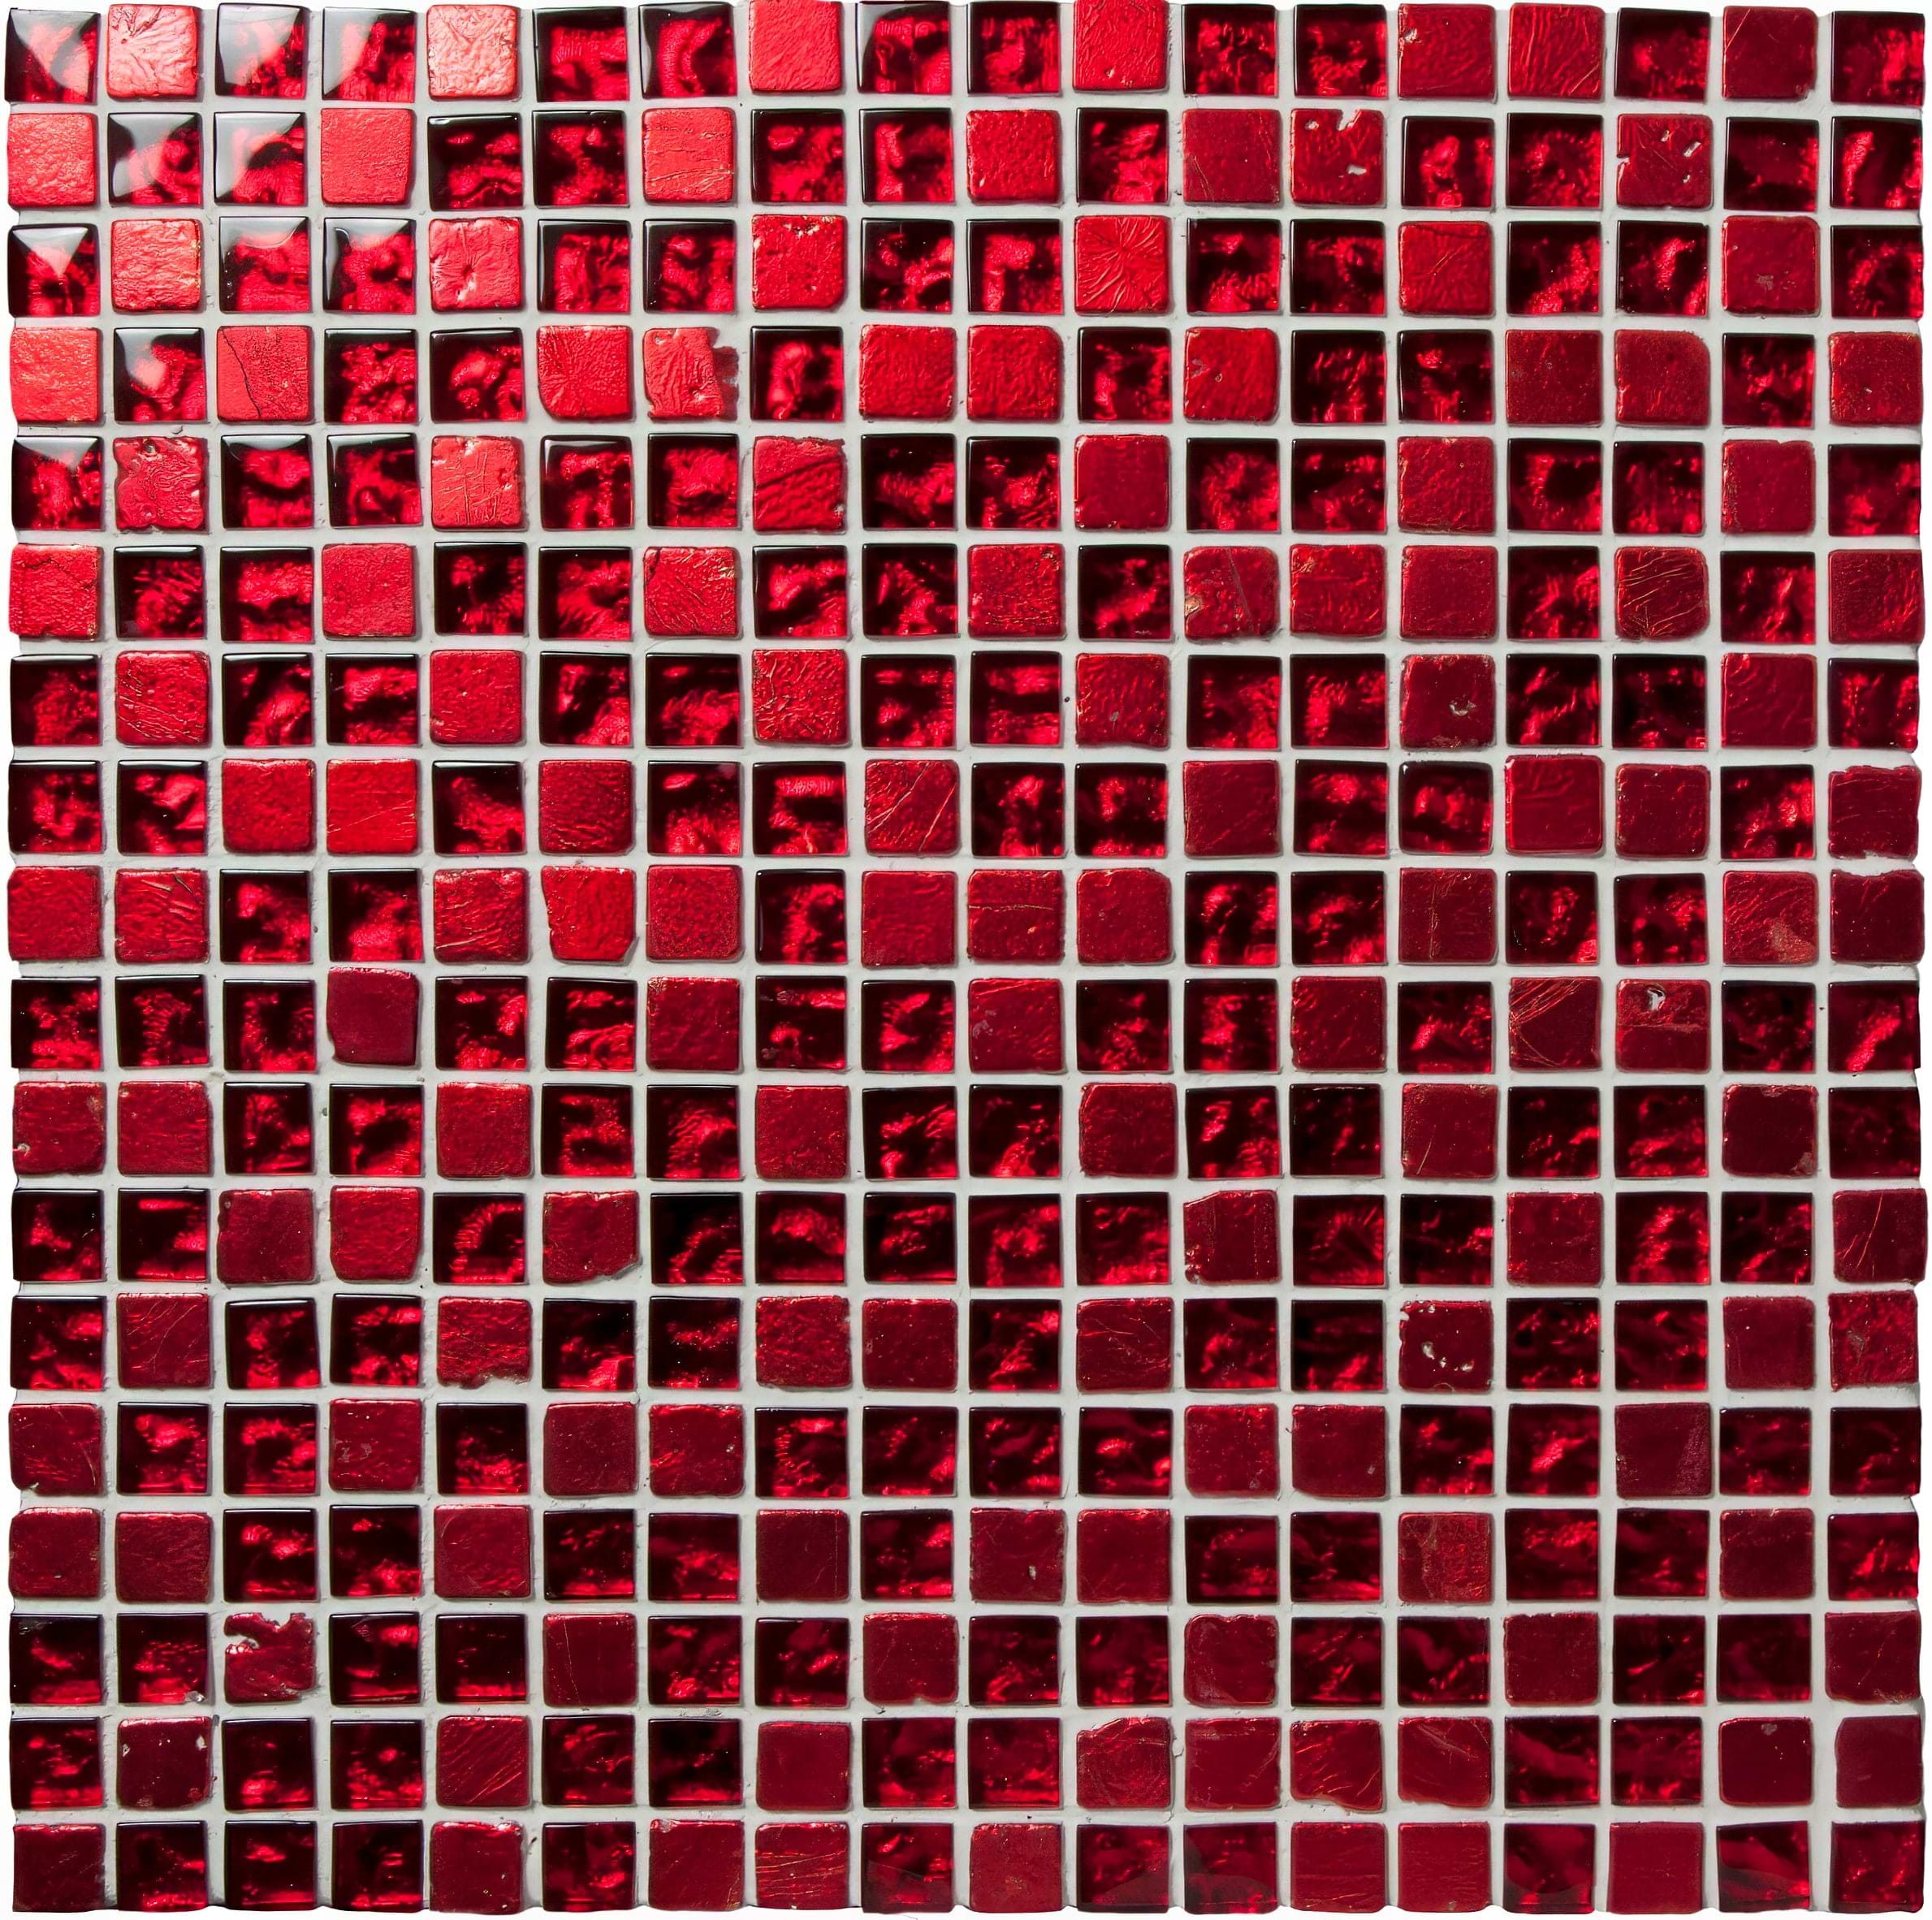 Morij Mosaic - Hyperion Tiles